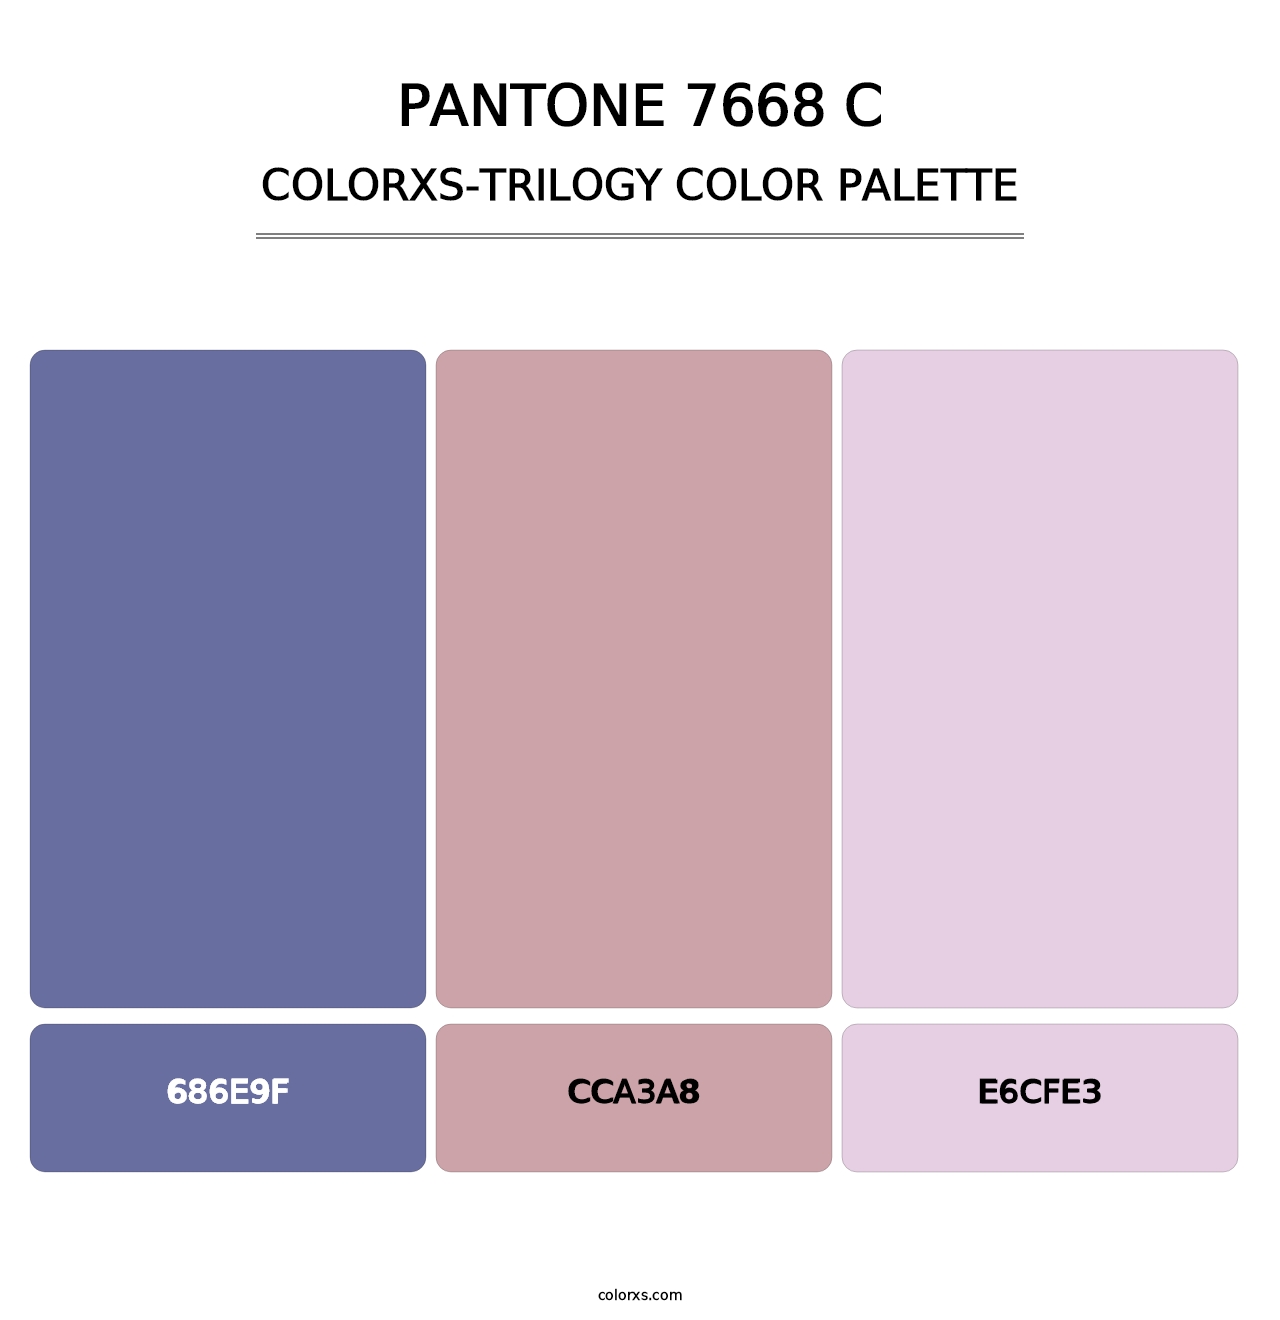 PANTONE 7668 C - Colorxs Trilogy Palette